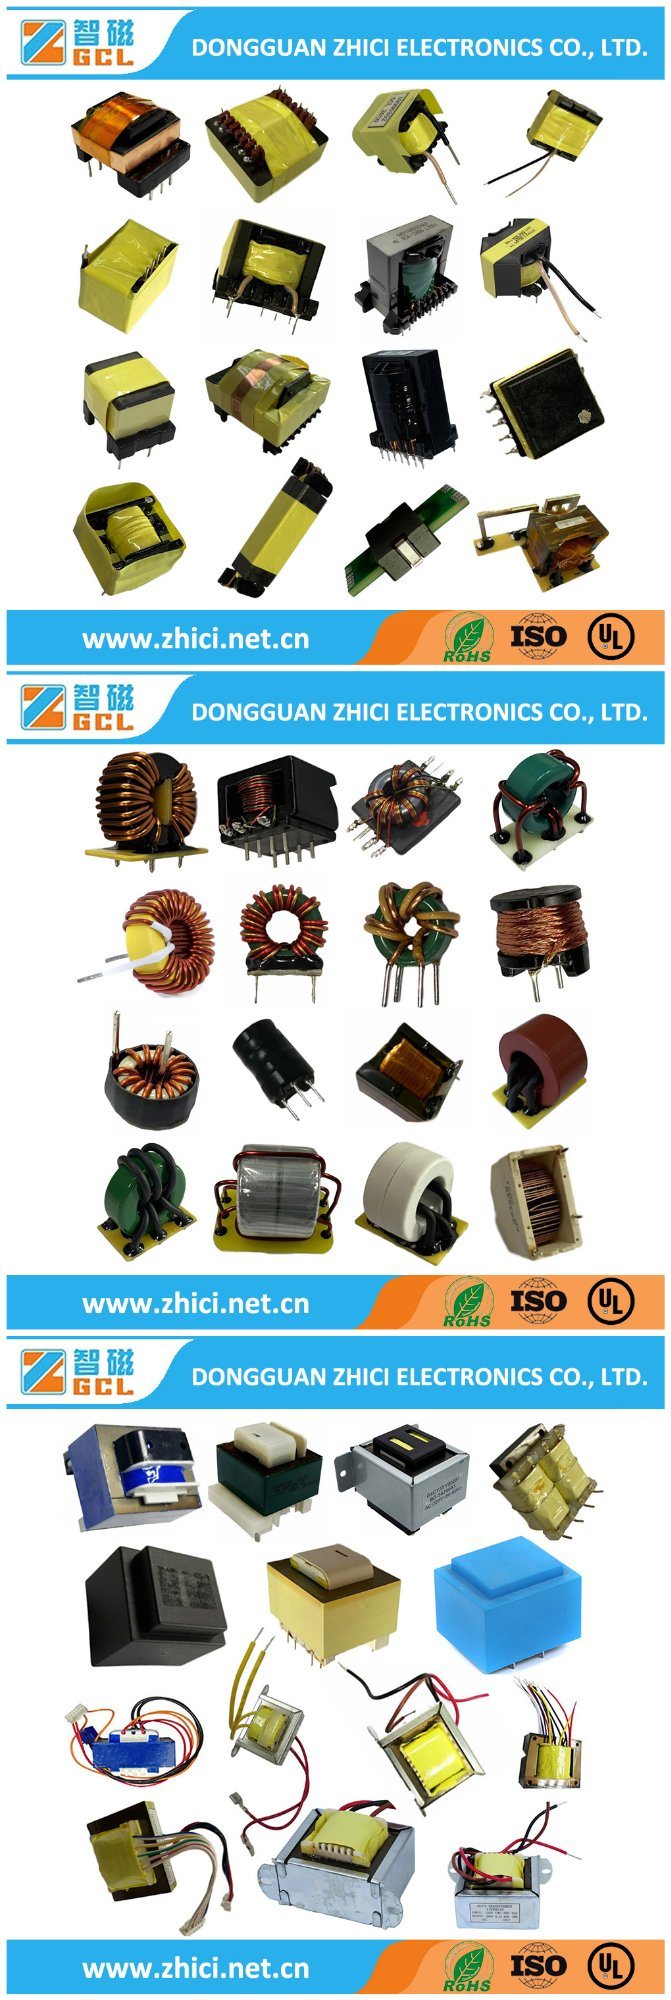 Er28 Electronic Transformer, LED Electronic Converter Voltage Transformer